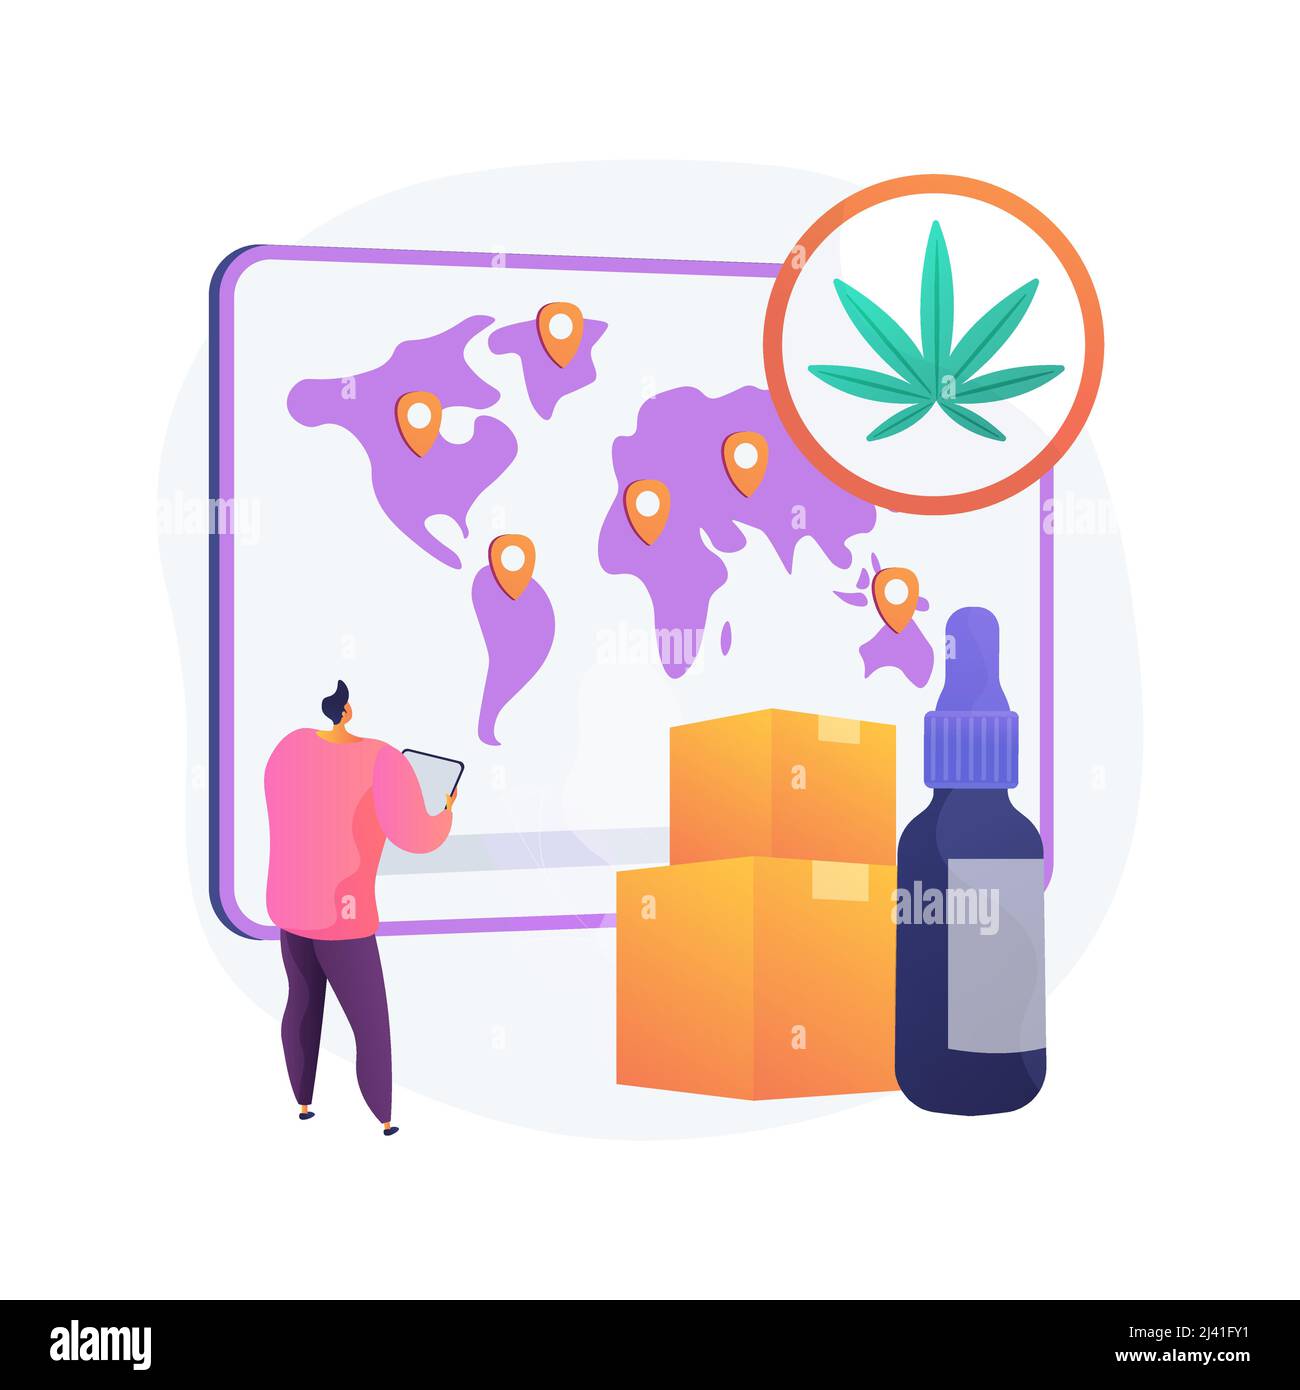 Verteilung von Hanf-Produkte abstraktes Konzept Vektor-Illustration. Cannabis-Einzelhandel, Marihuana-Absatzmarkt, online bestellen, Hanfextrakt, Lebensmittel Stock Vektor